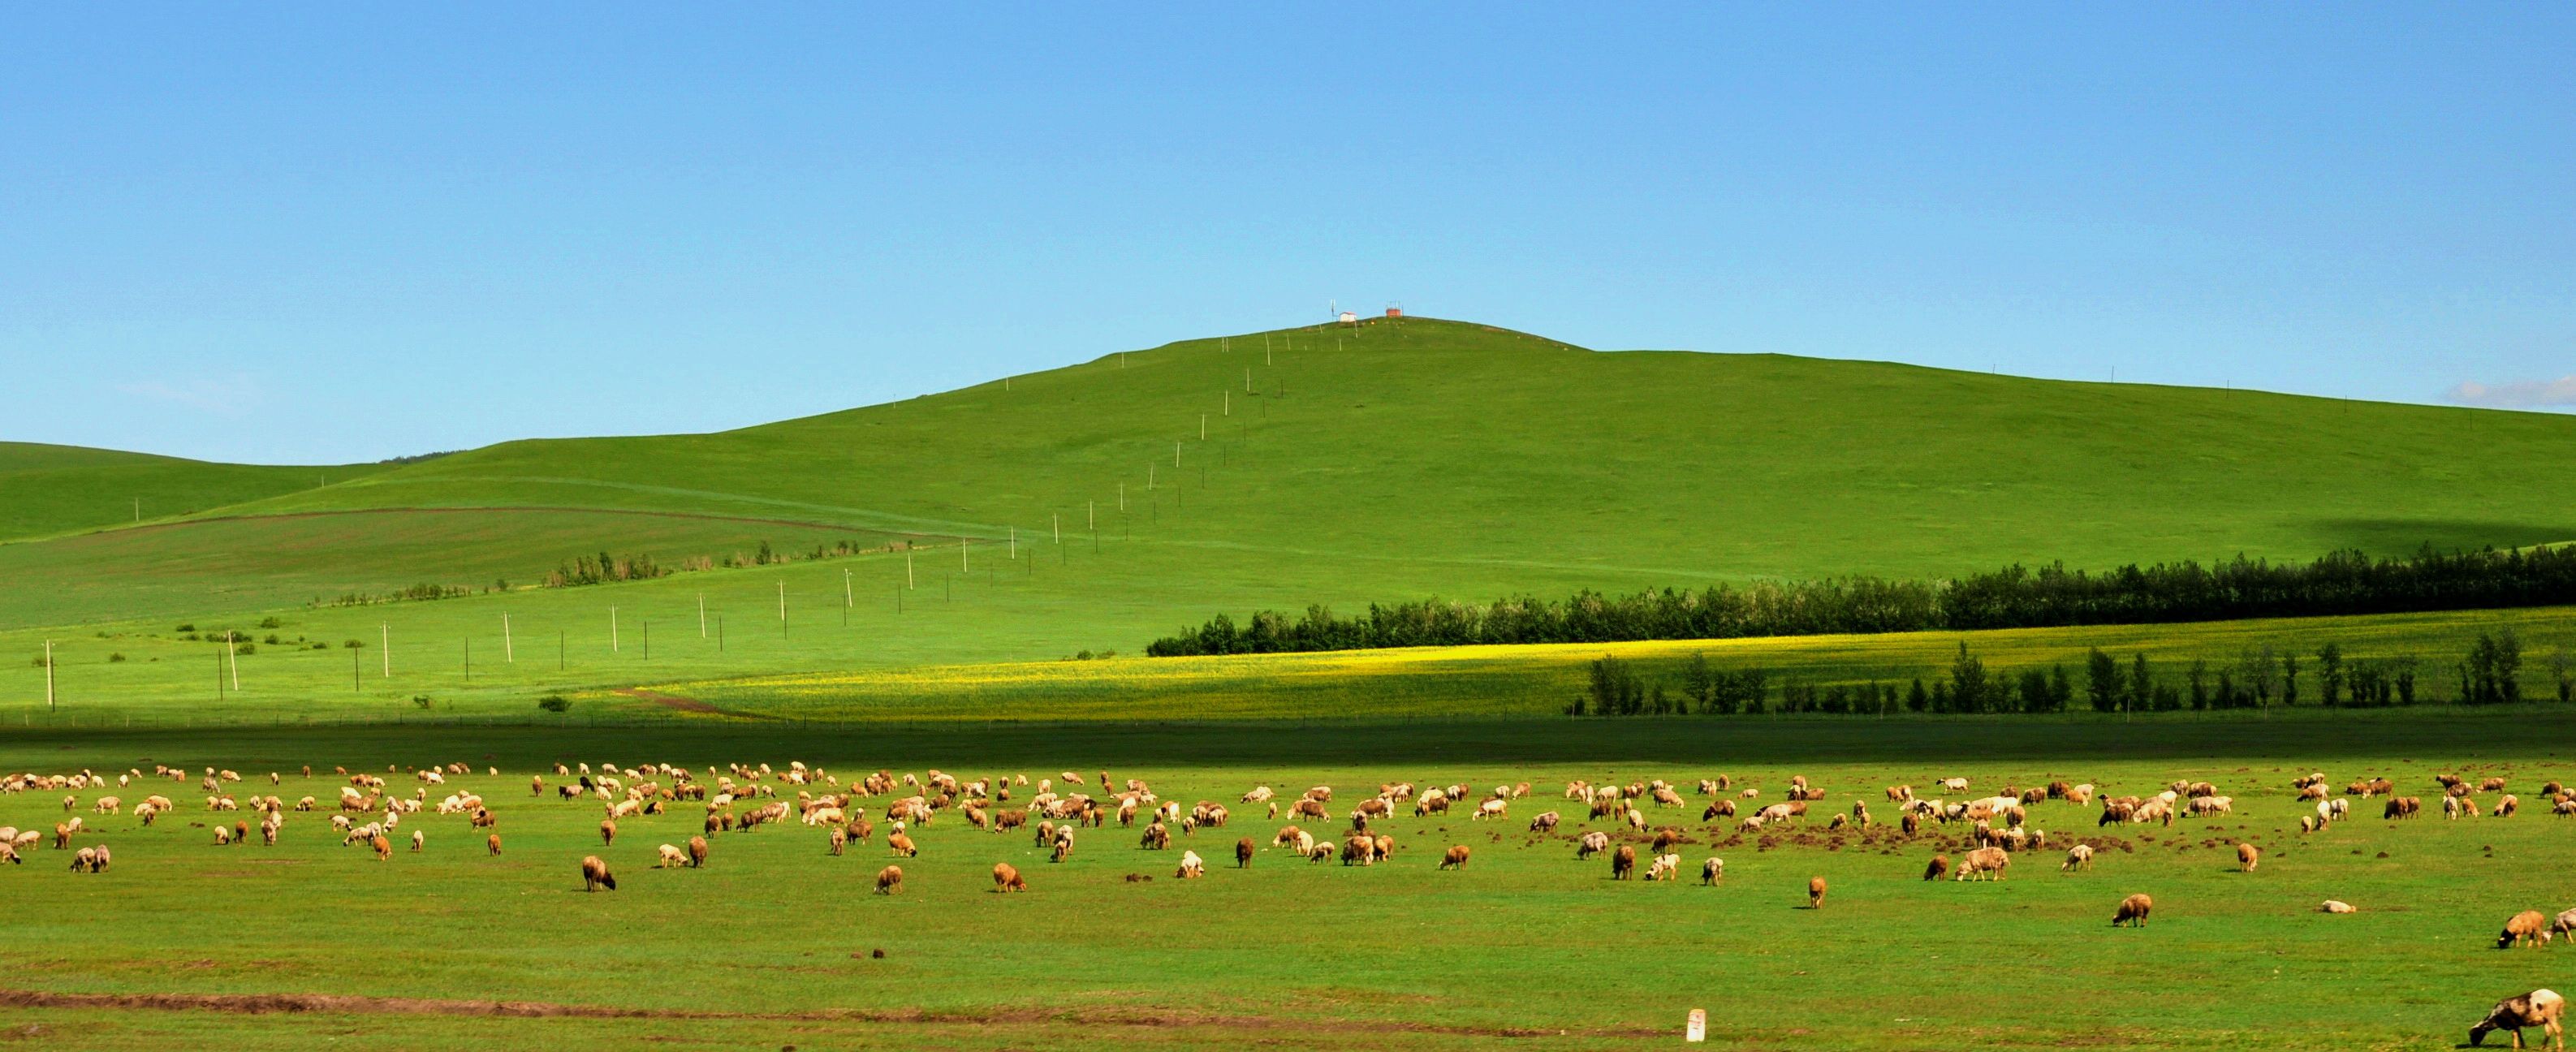 游客认为内蒙古收纳了中国各地的冰雪美景,辽阔的草原,连绵的群山